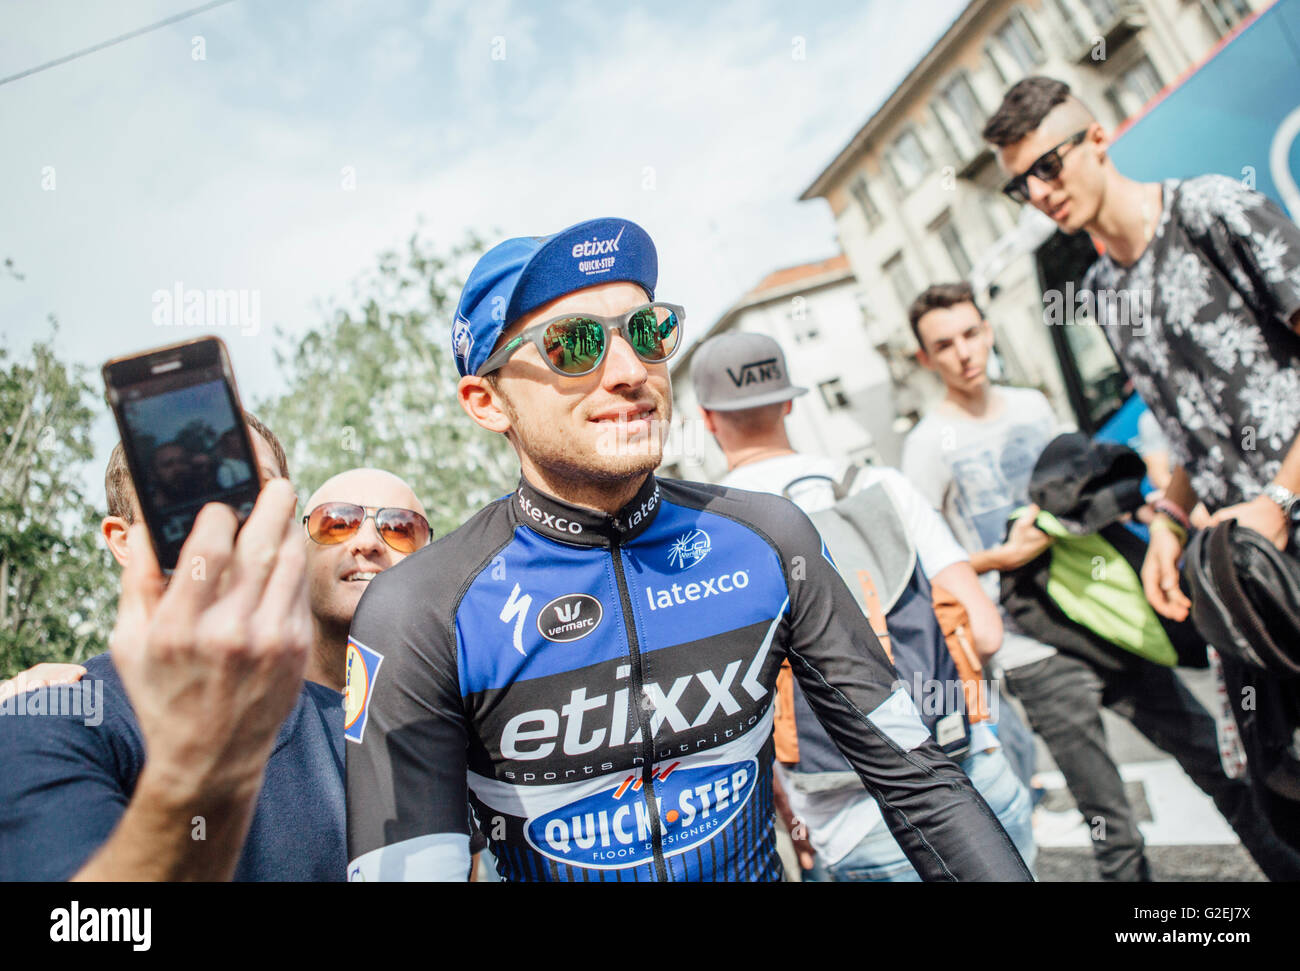 Turin, Italien, 29. Mai 2016. Ginluca Brambilla aus Etixx Quick Step nach der letzten Phase (Turin) des Giro d'Italia 2016 gesehen. Credit: Gonzales Foto - Alberto Grasso. Stockfoto